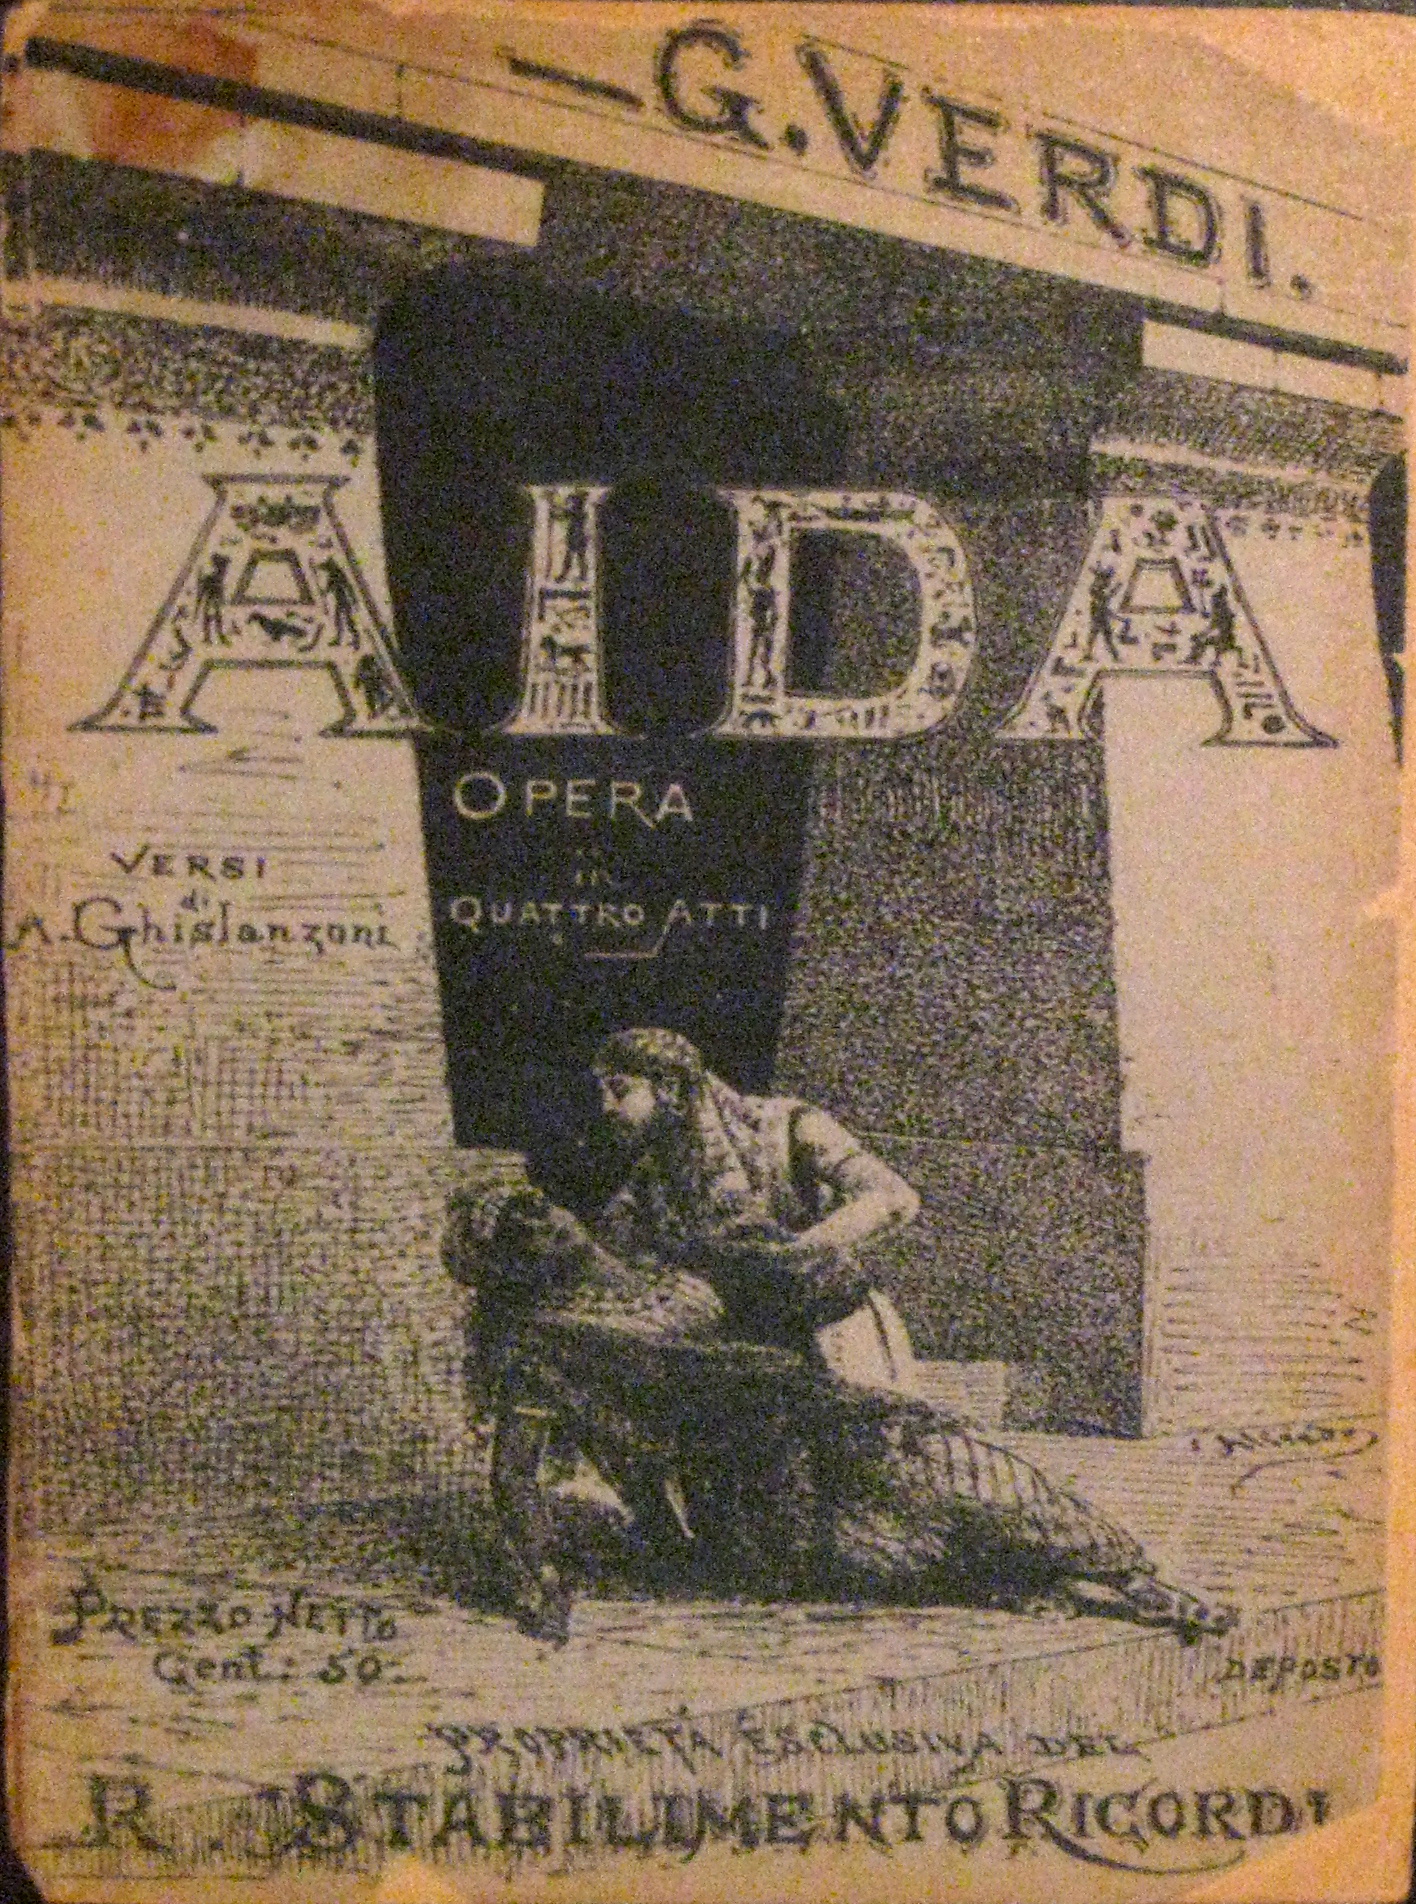 Open in Modal Box https://museodelrisorgimento.lucca.it/wp-content/uploads/2014/11/Libretto-dellAida-del-1890.jpg